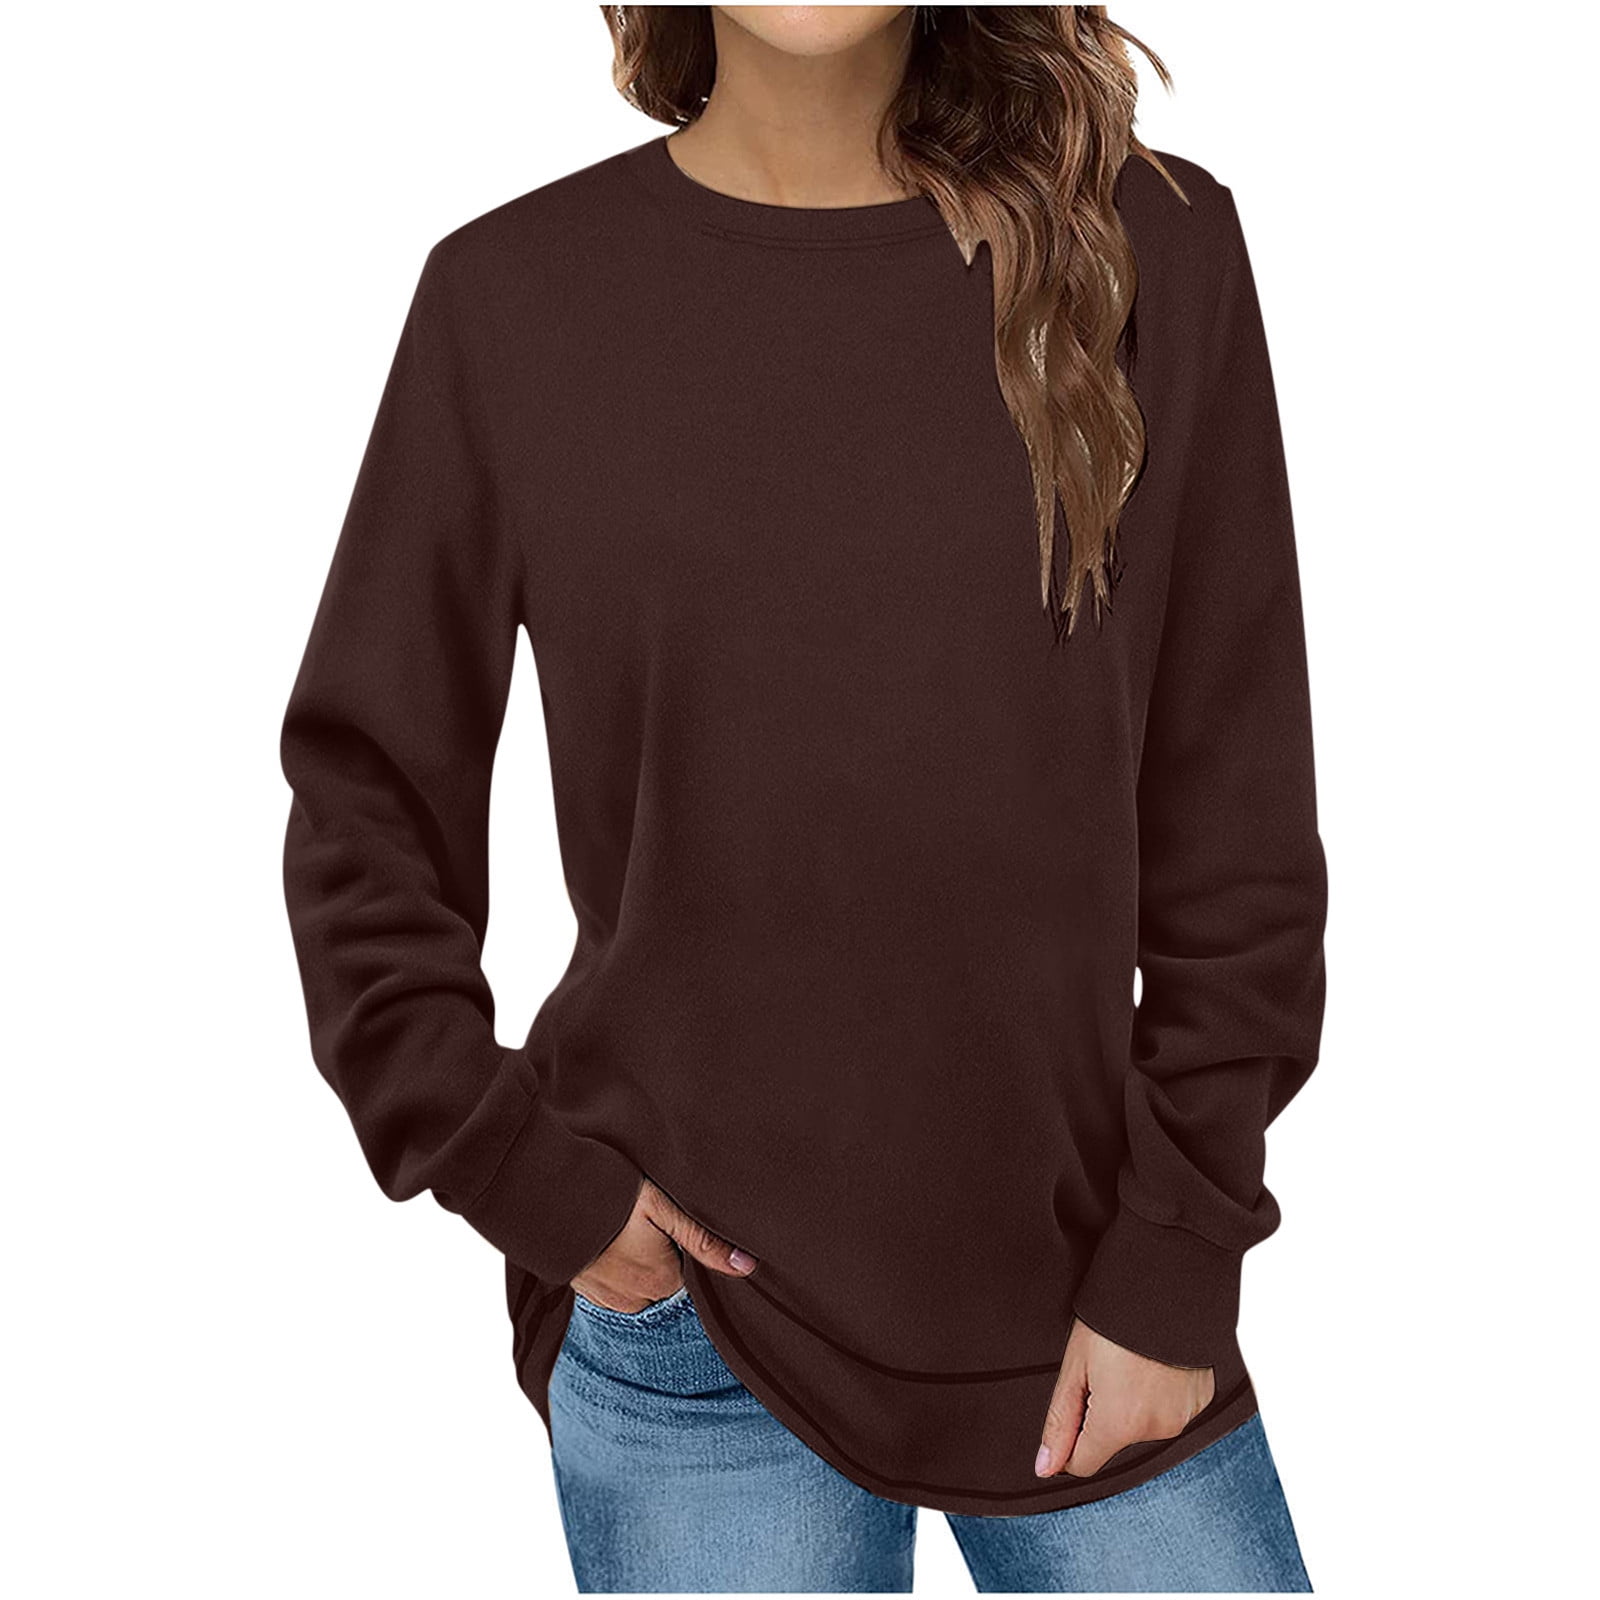 JWZUY Sweatshirts for Women Crewneck Long Sleeve Shirts Tunic